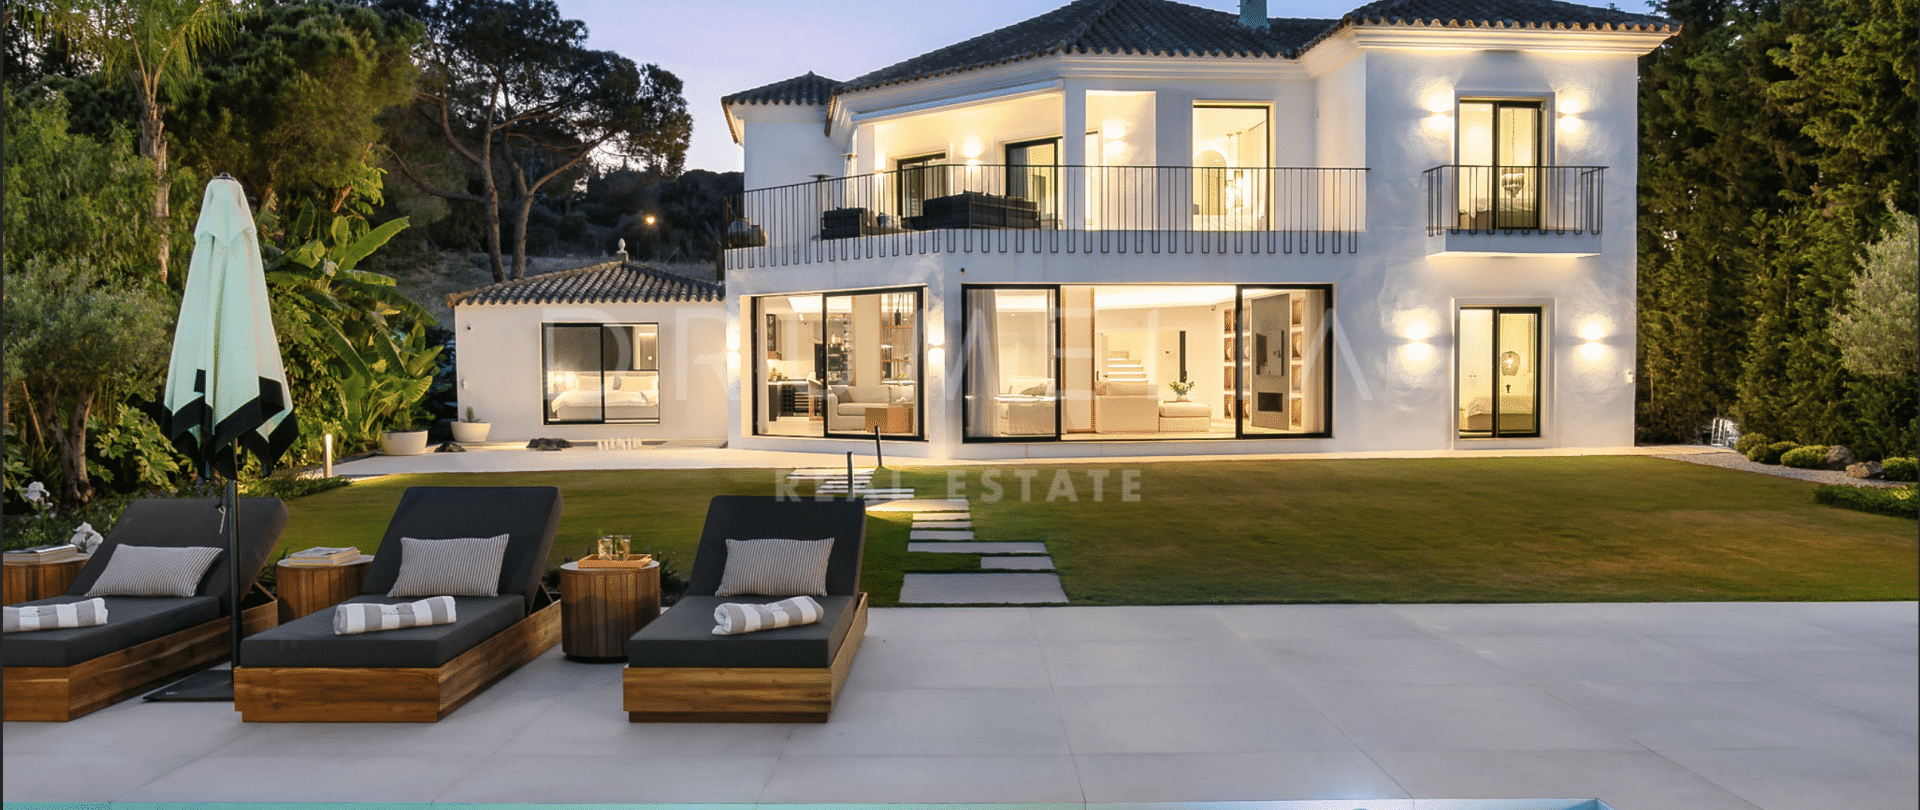 Anspruchsvolle und stilvolle moderne High-End-Villa in der schönen Nueva Andalucía, Marbella